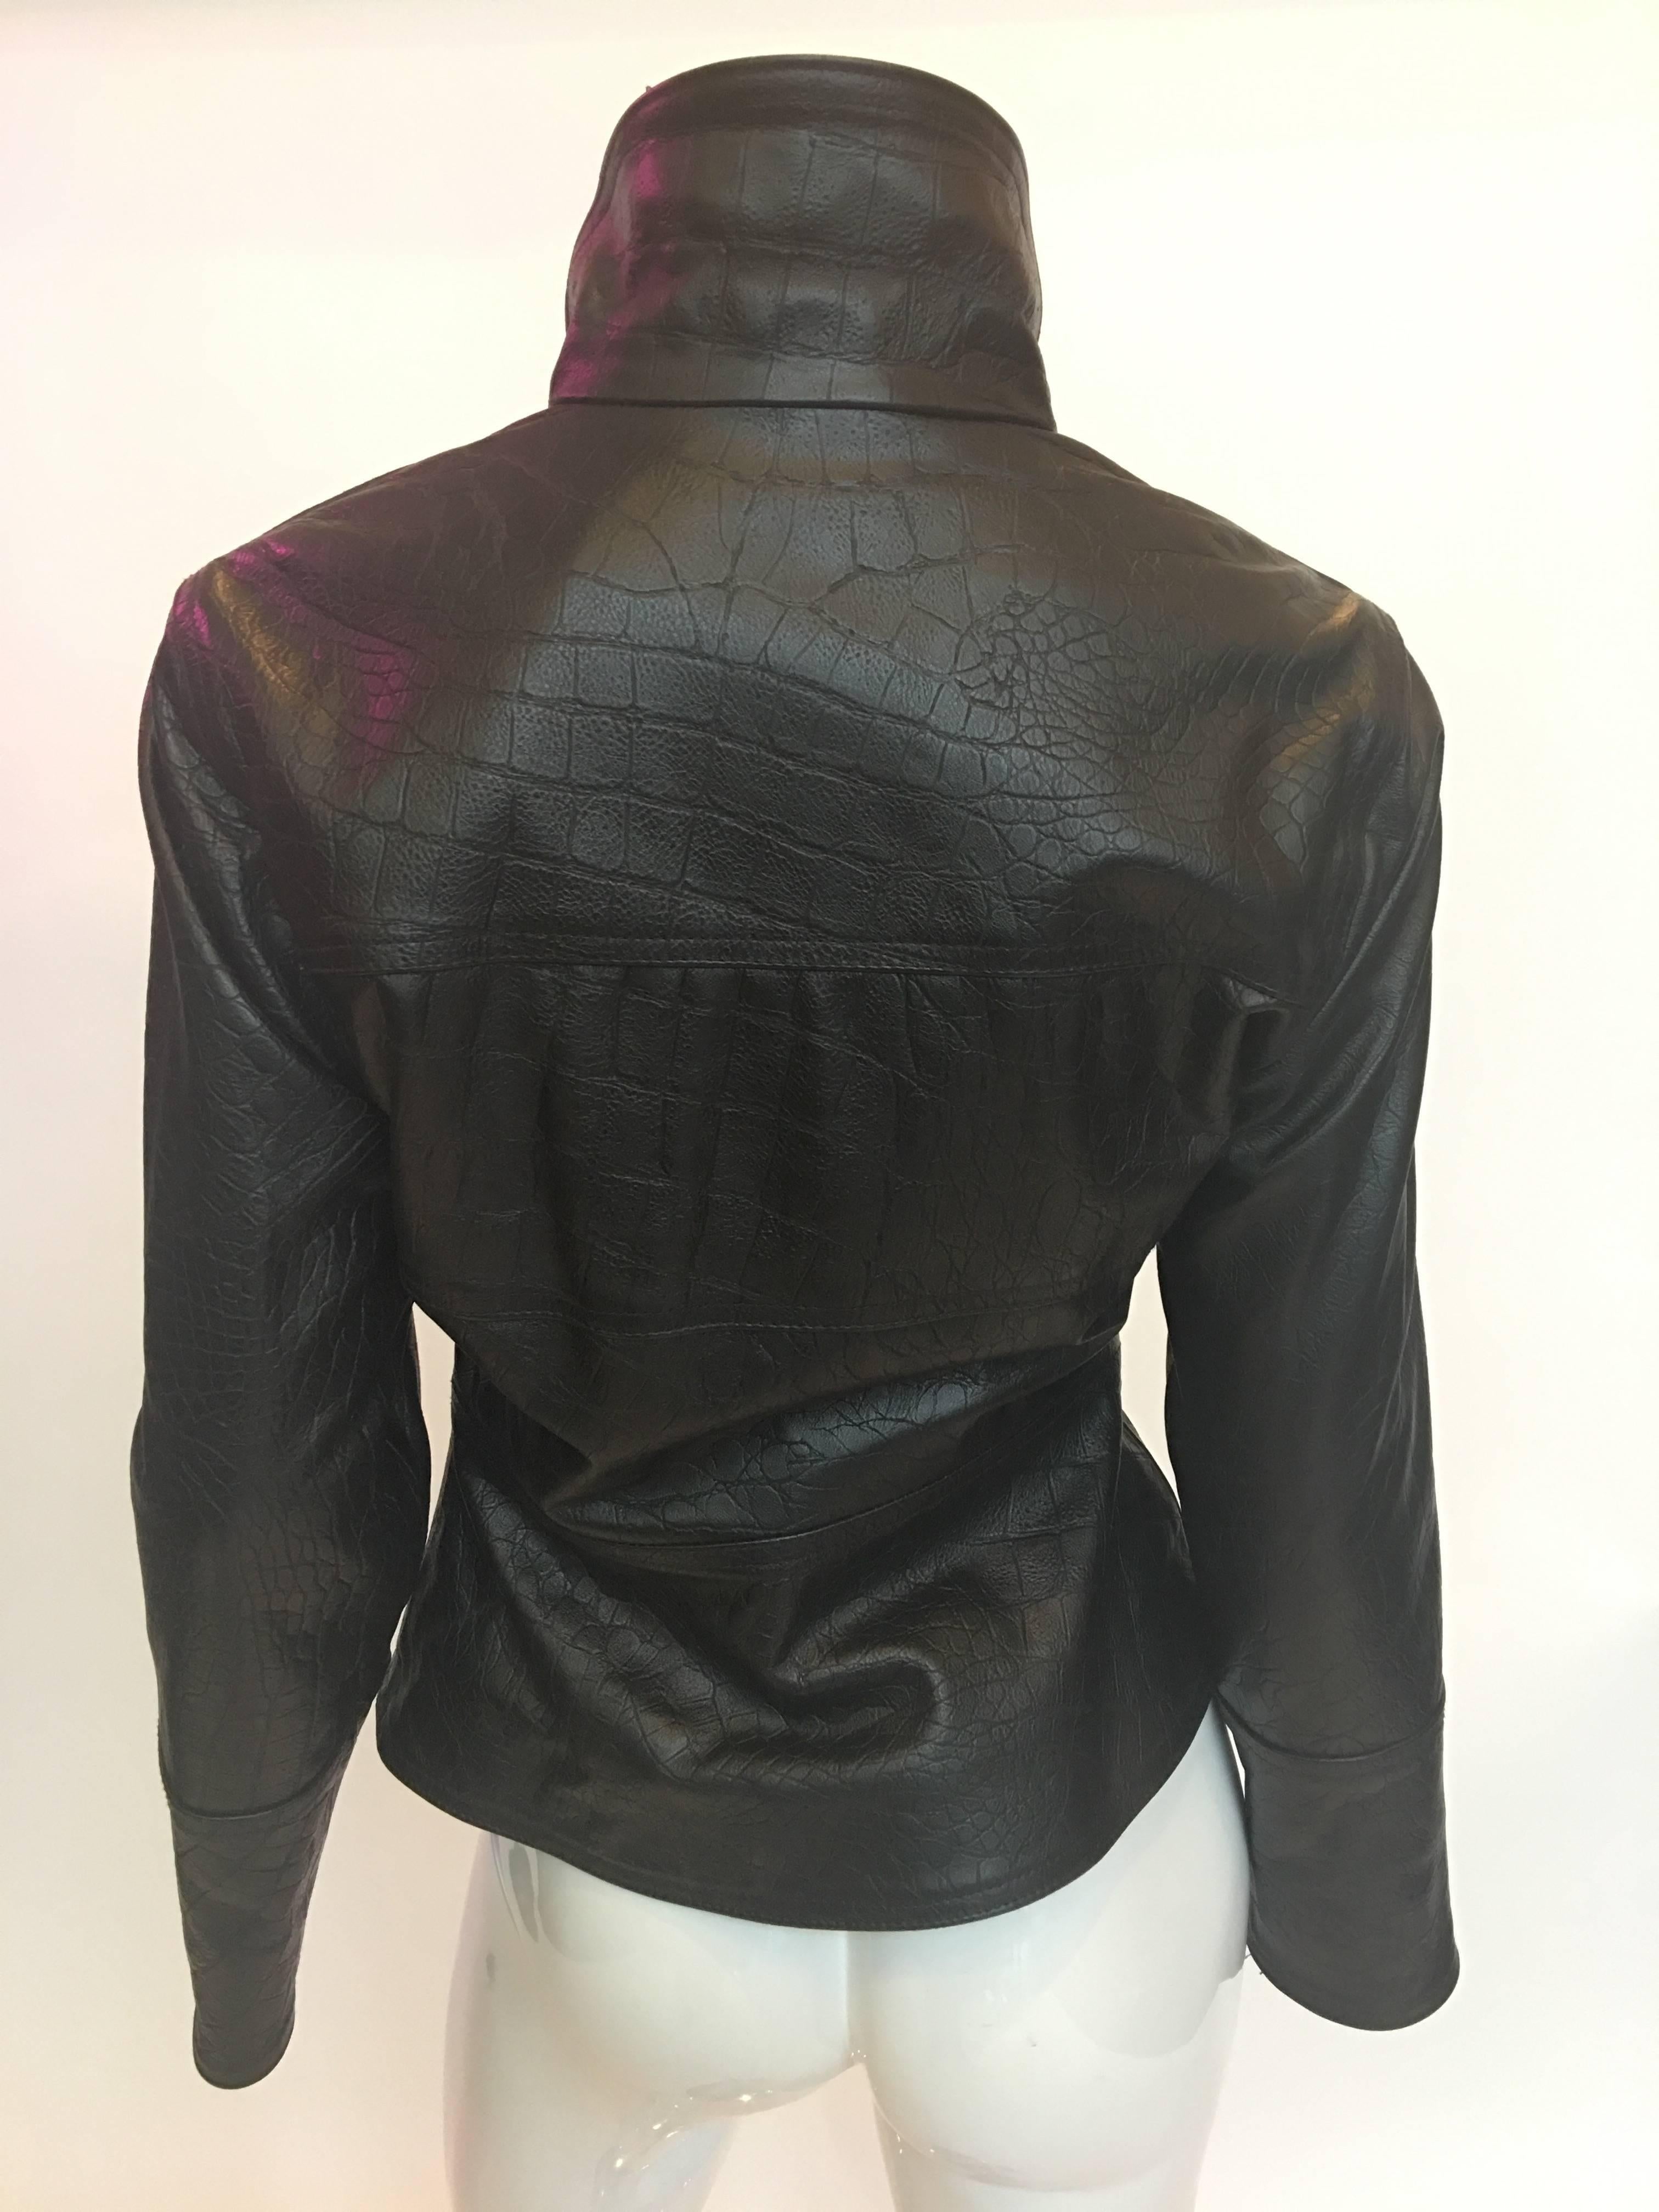 Veste Versace en cuir noir gaufré lézard des années 1990
*Ce n'est pas du vrai lézard, mais du cuir estampillé lézard

Epaules - de la couture à la couture : 16